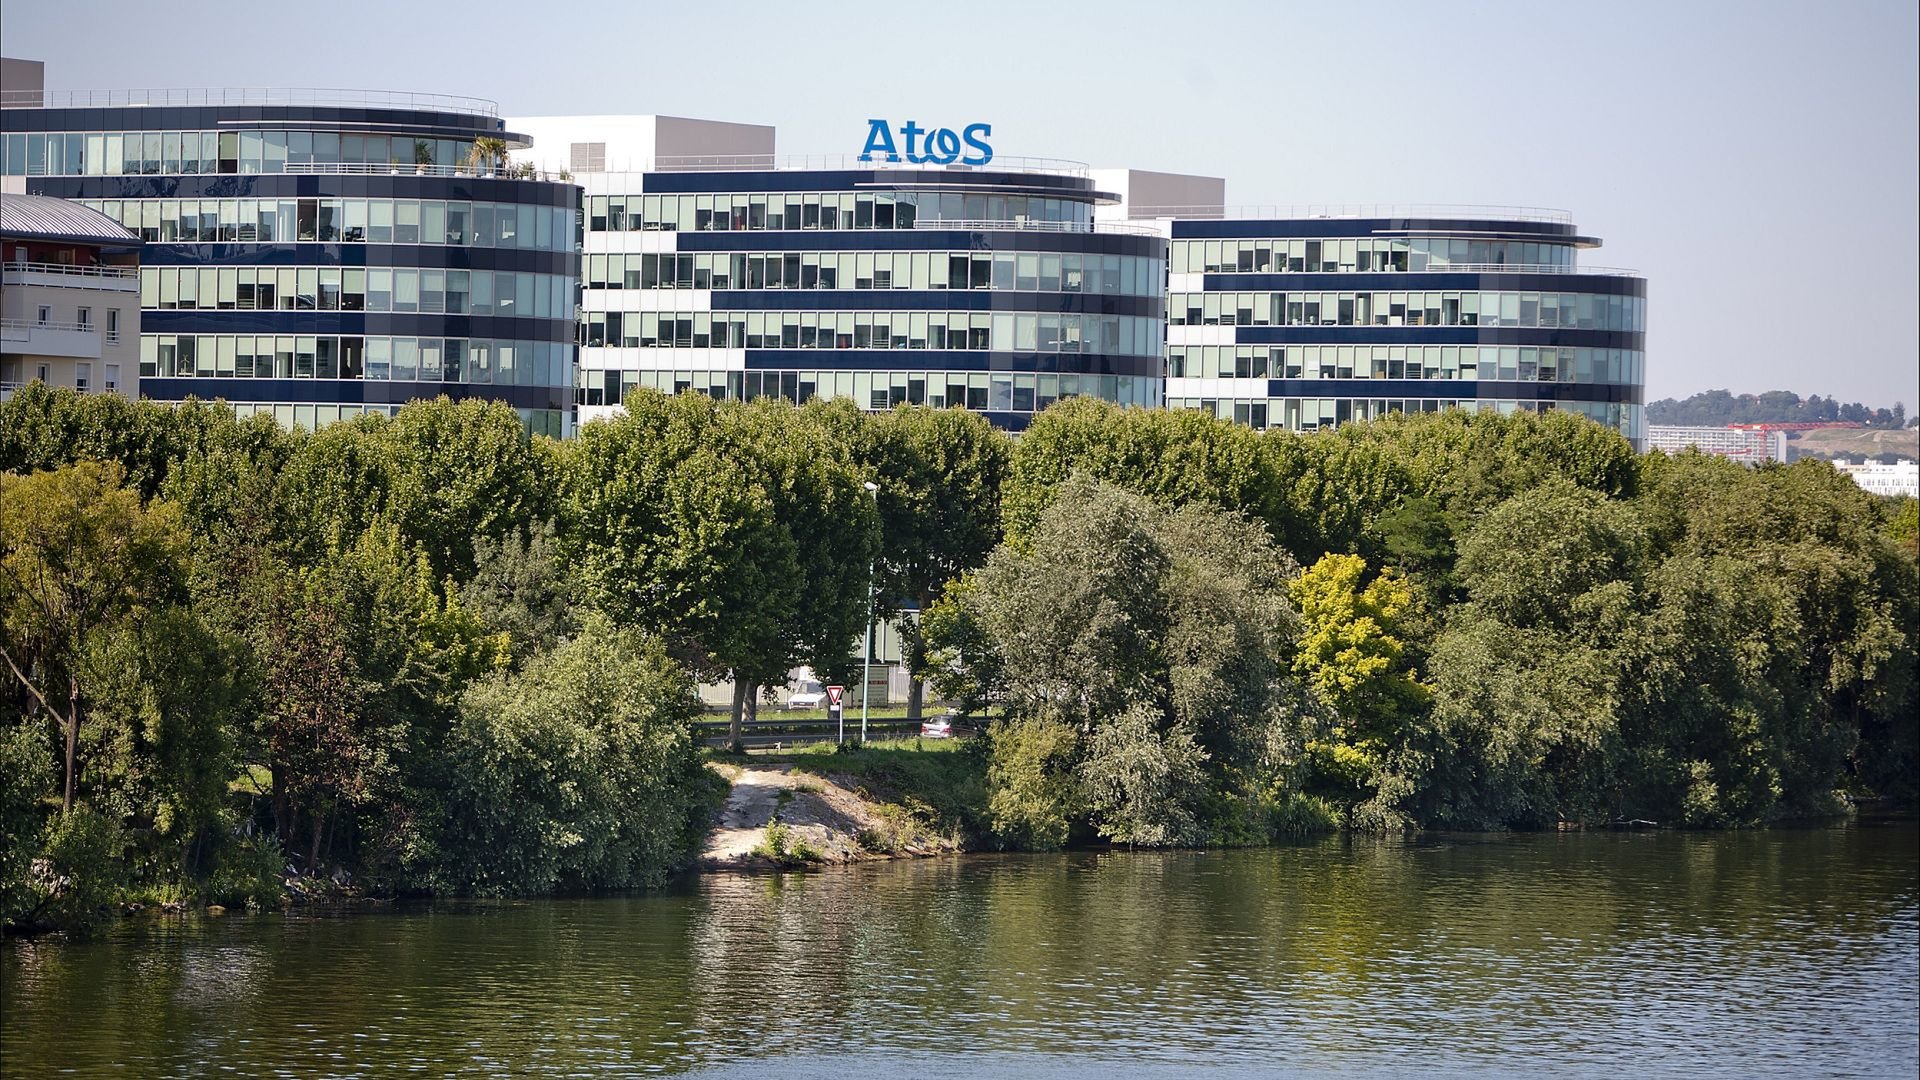 Le gouvernement français envisage l'acquisition d'actifs stratégiques d'Atos pour un milliard d'euros: informatique avancée, systèmes critiques et produits cybernétiques